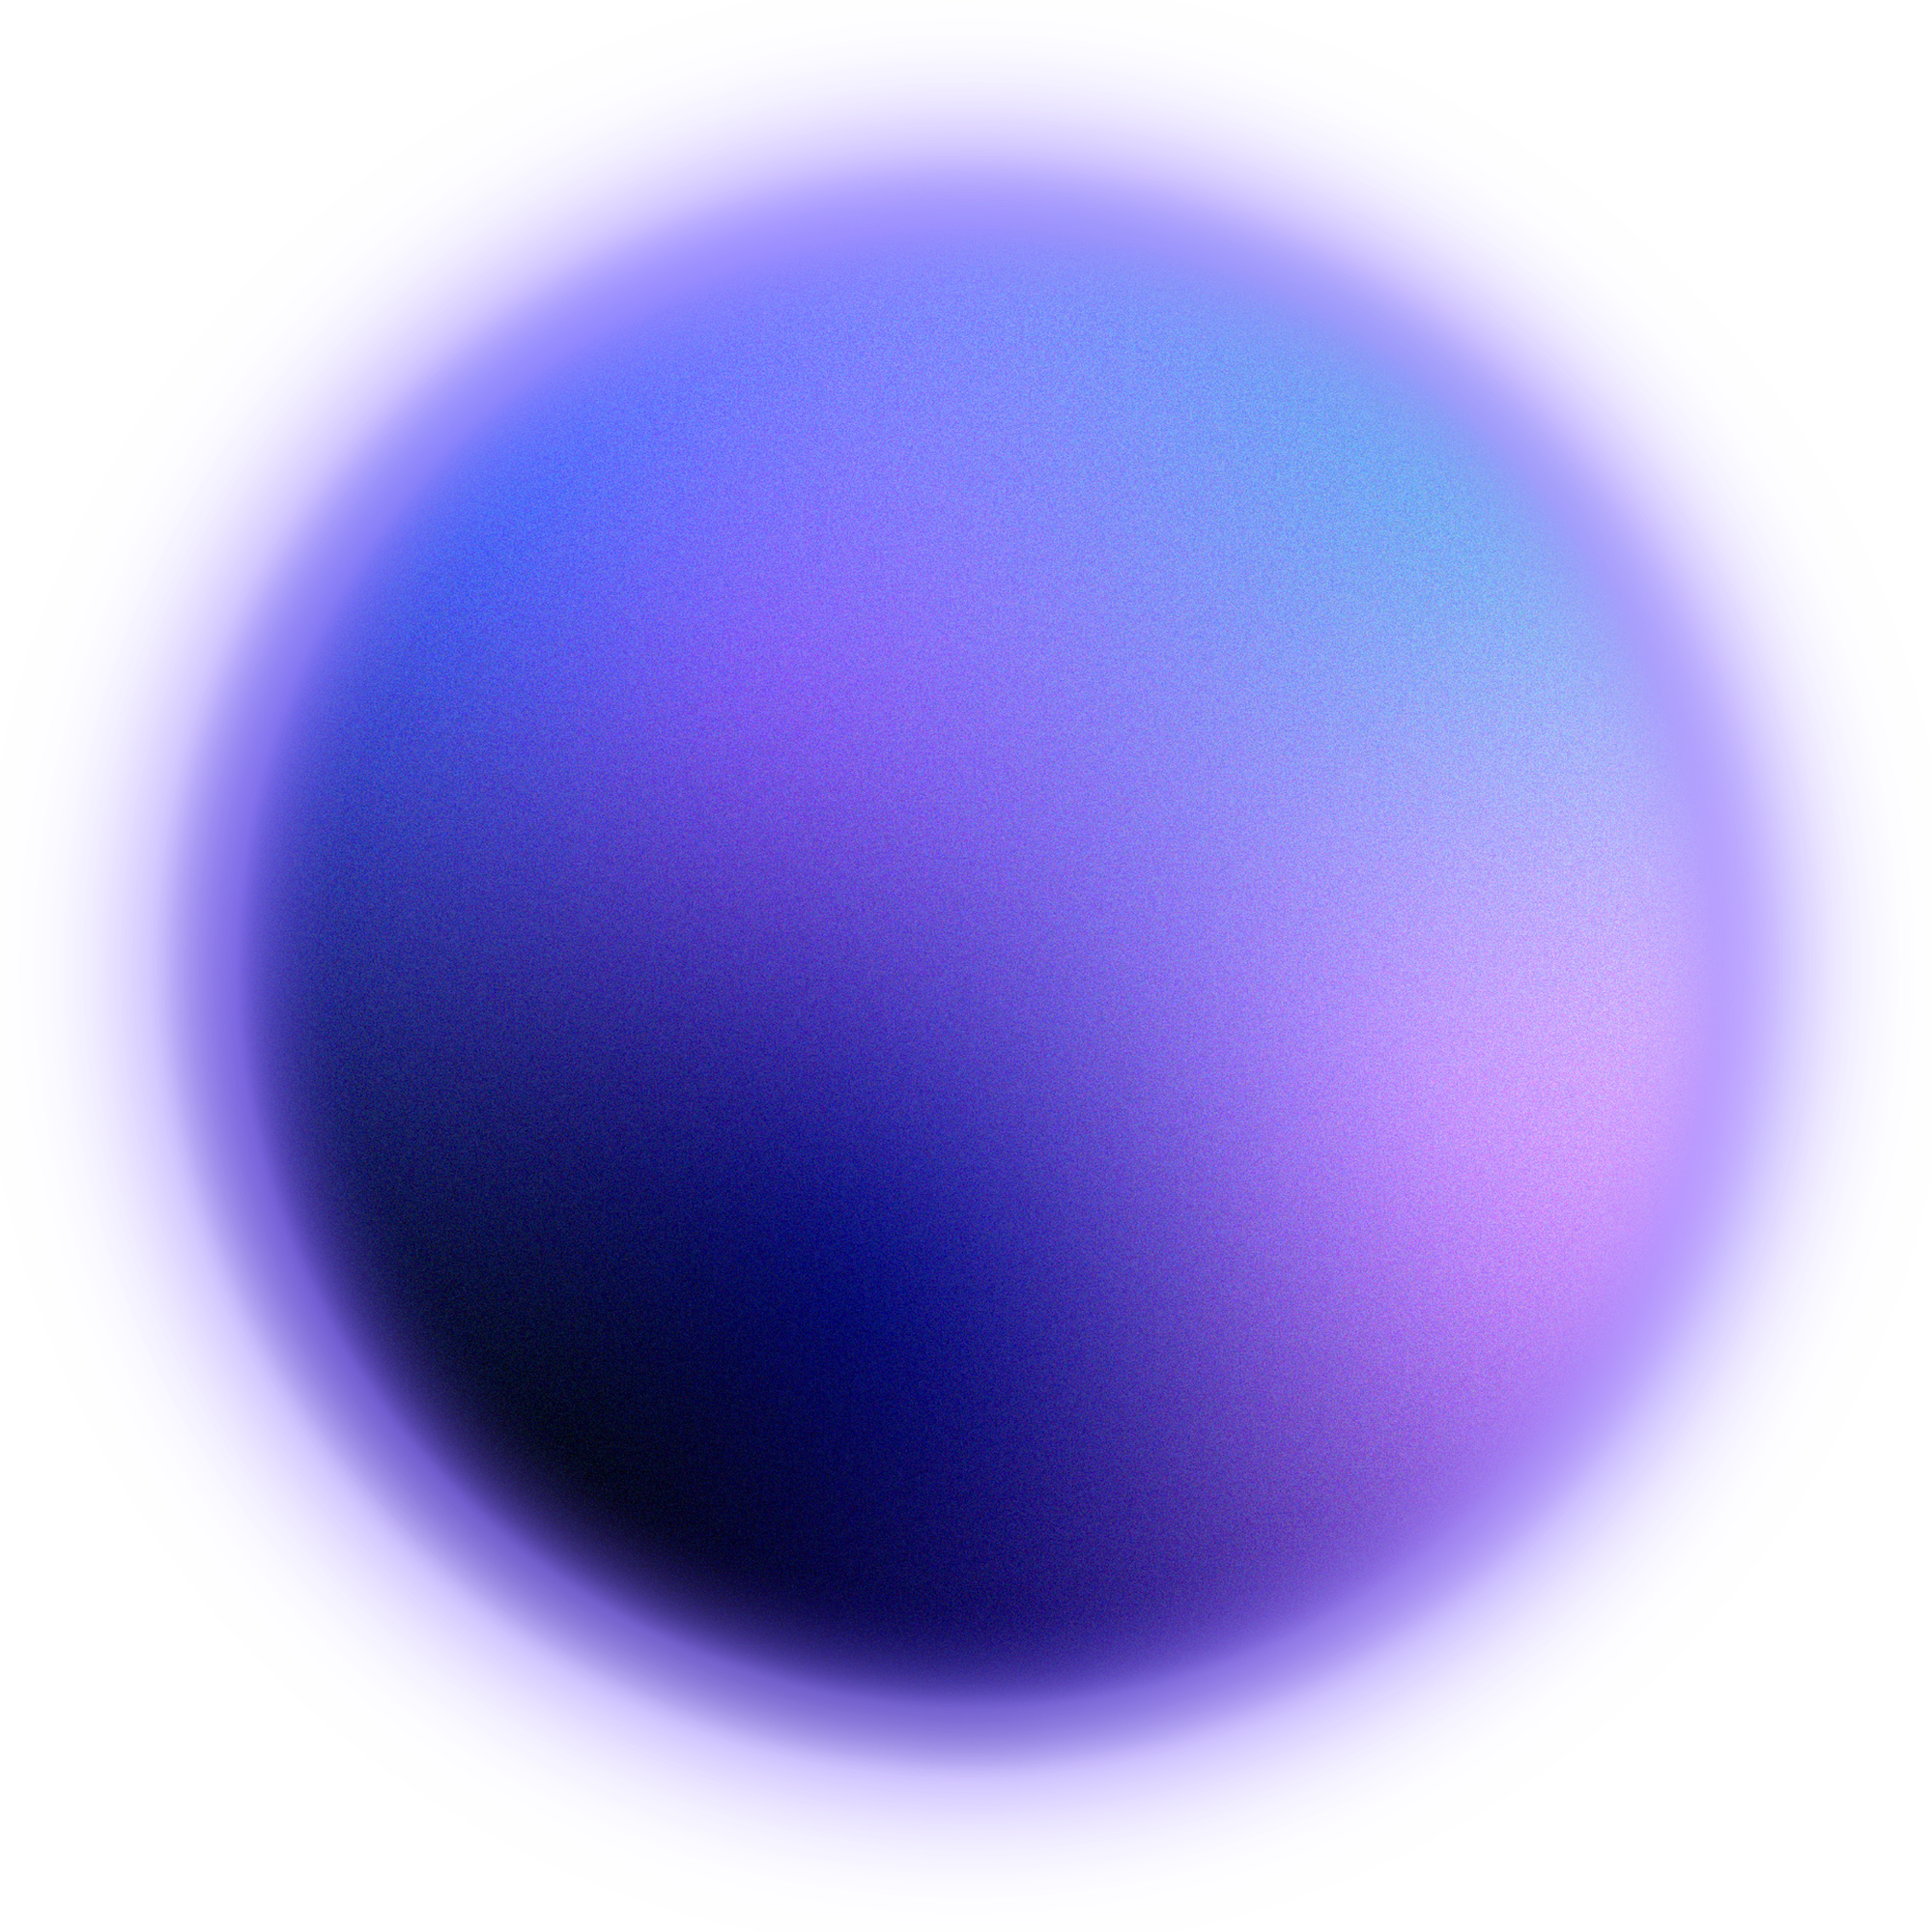 a large purple planet